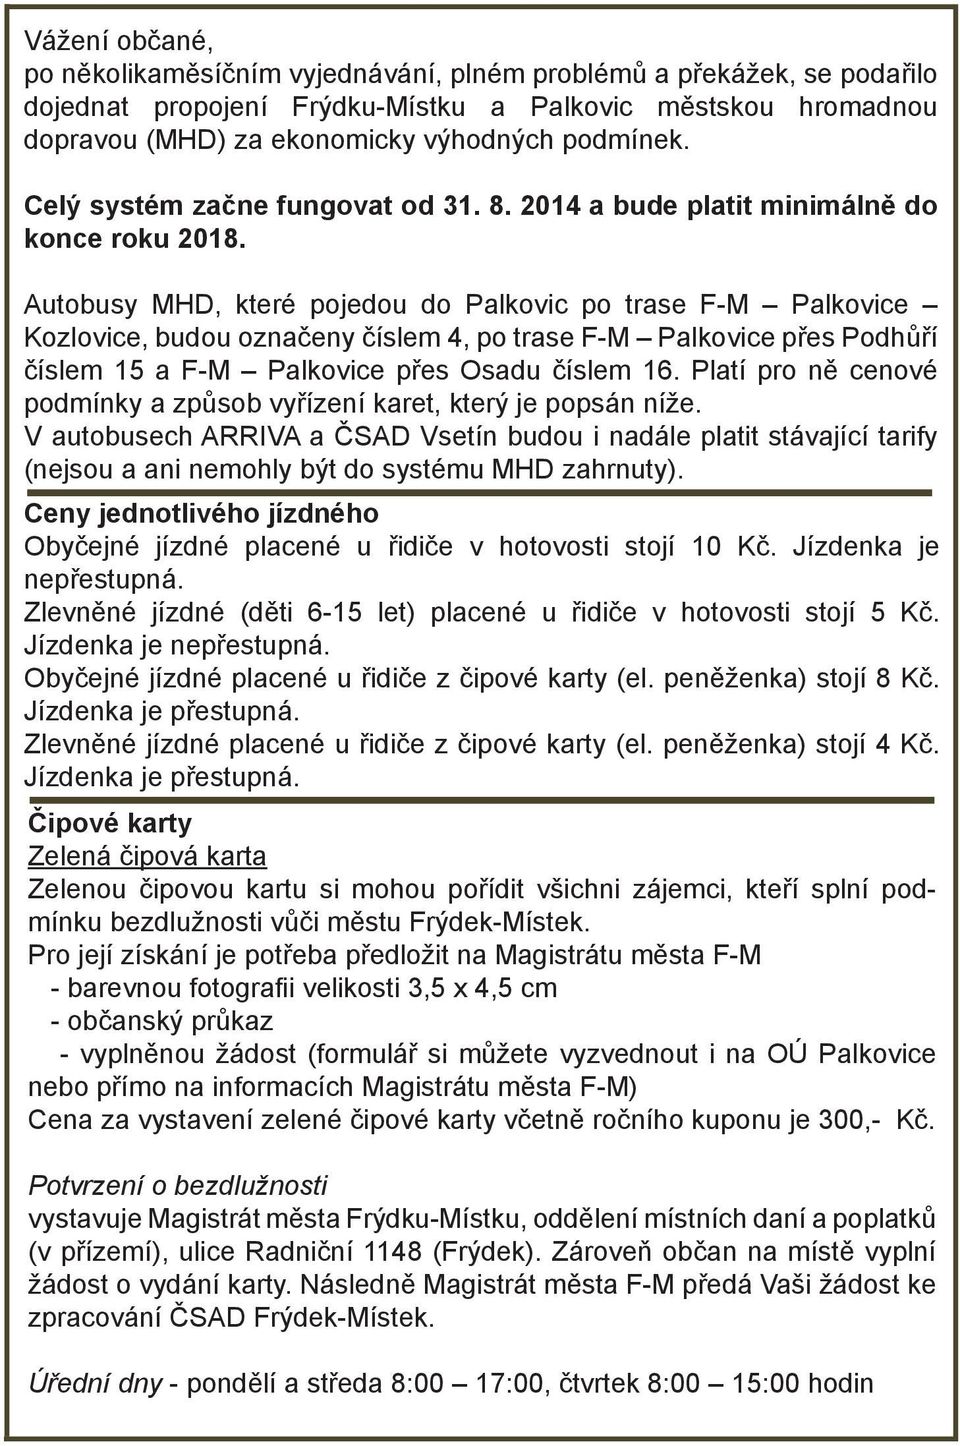 Autobusy MHD, které pojedou do Palkovic po trase F-M Palkovice Kozlovice, budou označeny číslem 4, po trase F-M Palkovice přes Podhůří číslem 15 a F-M Palkovice přes Osadu číslem 16.